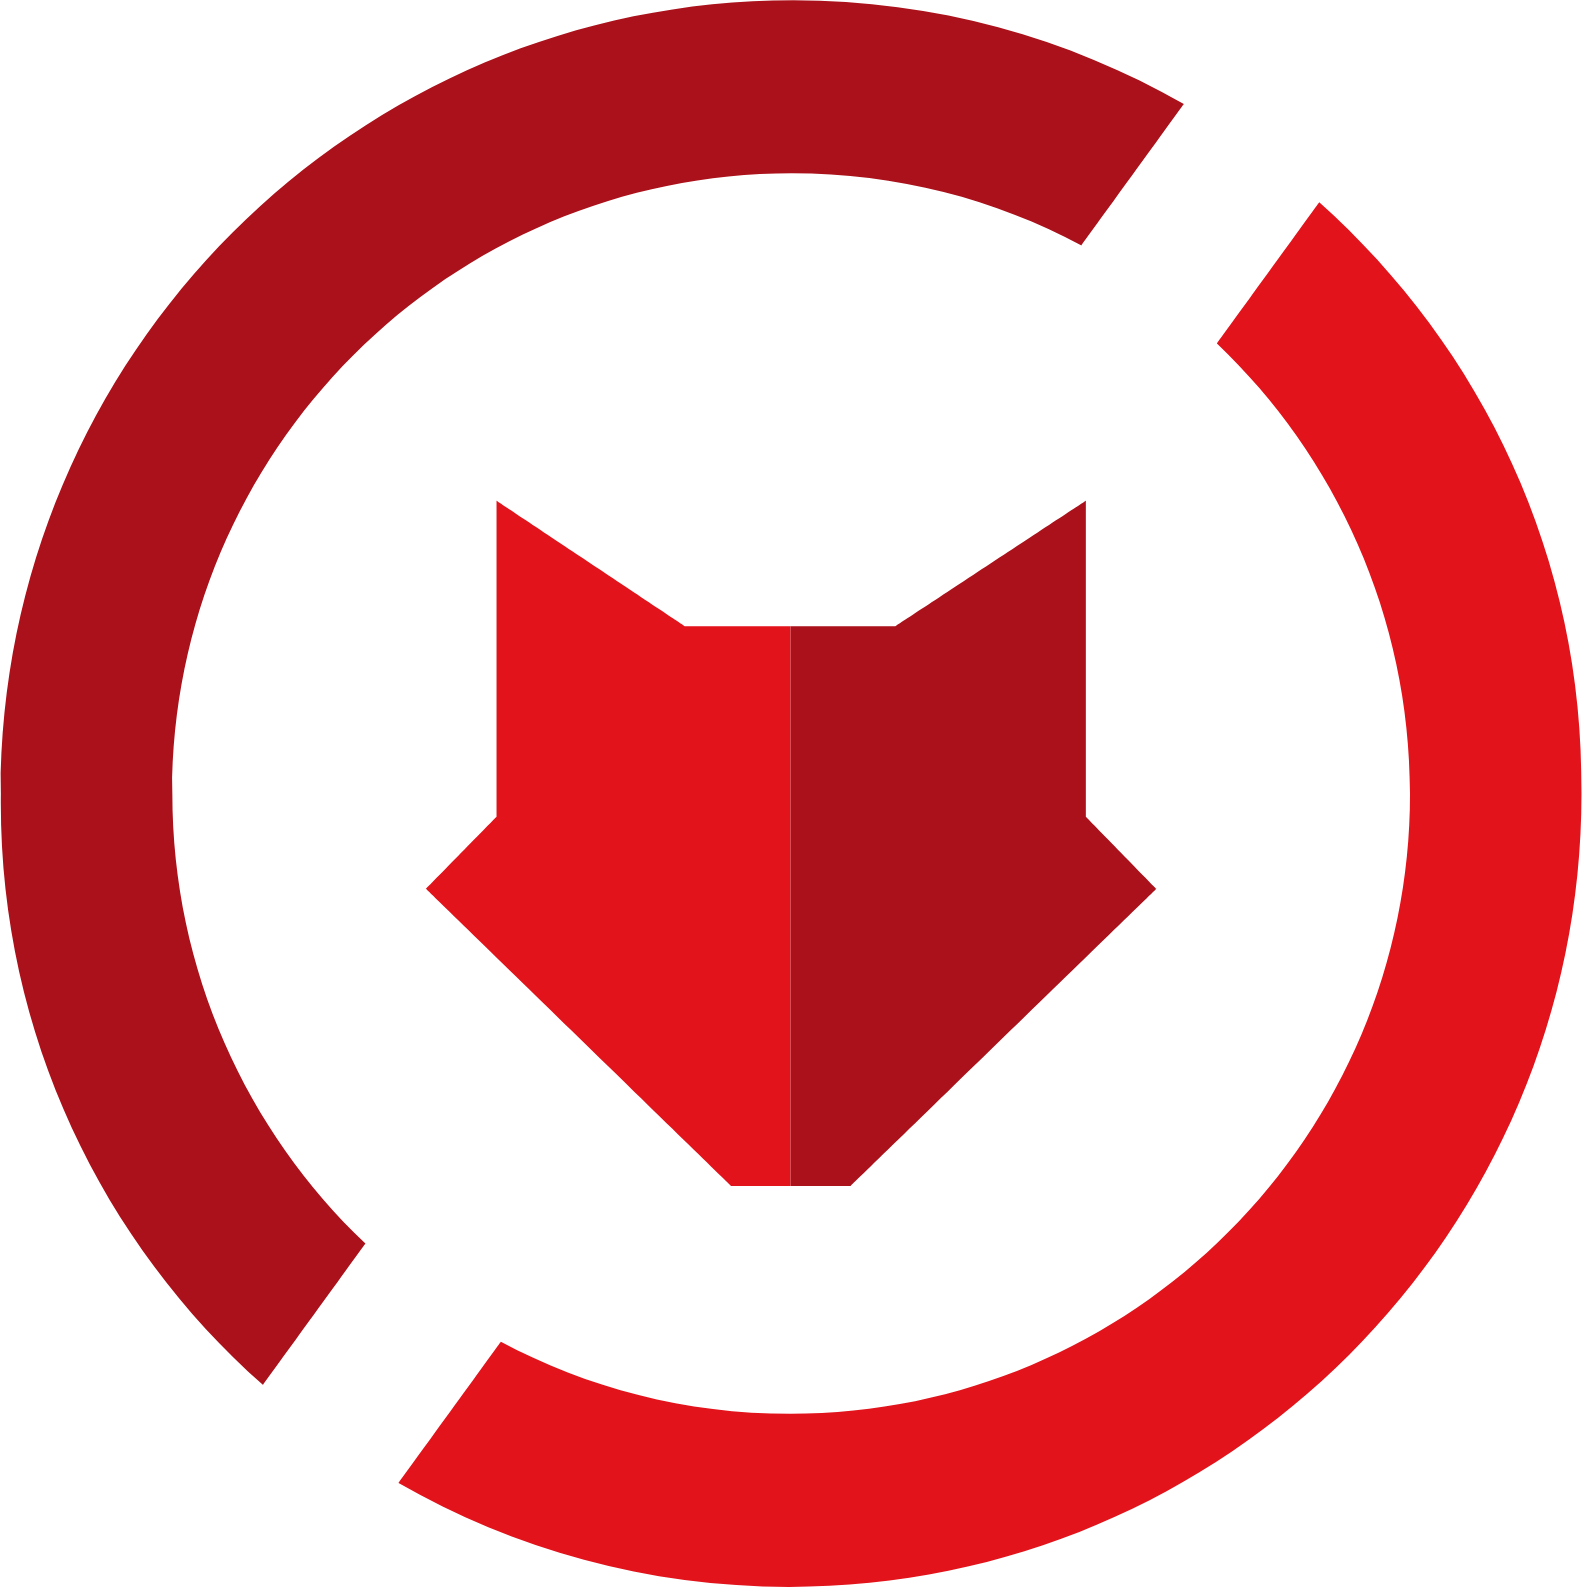 ZeroFox logo (transparent PNG)